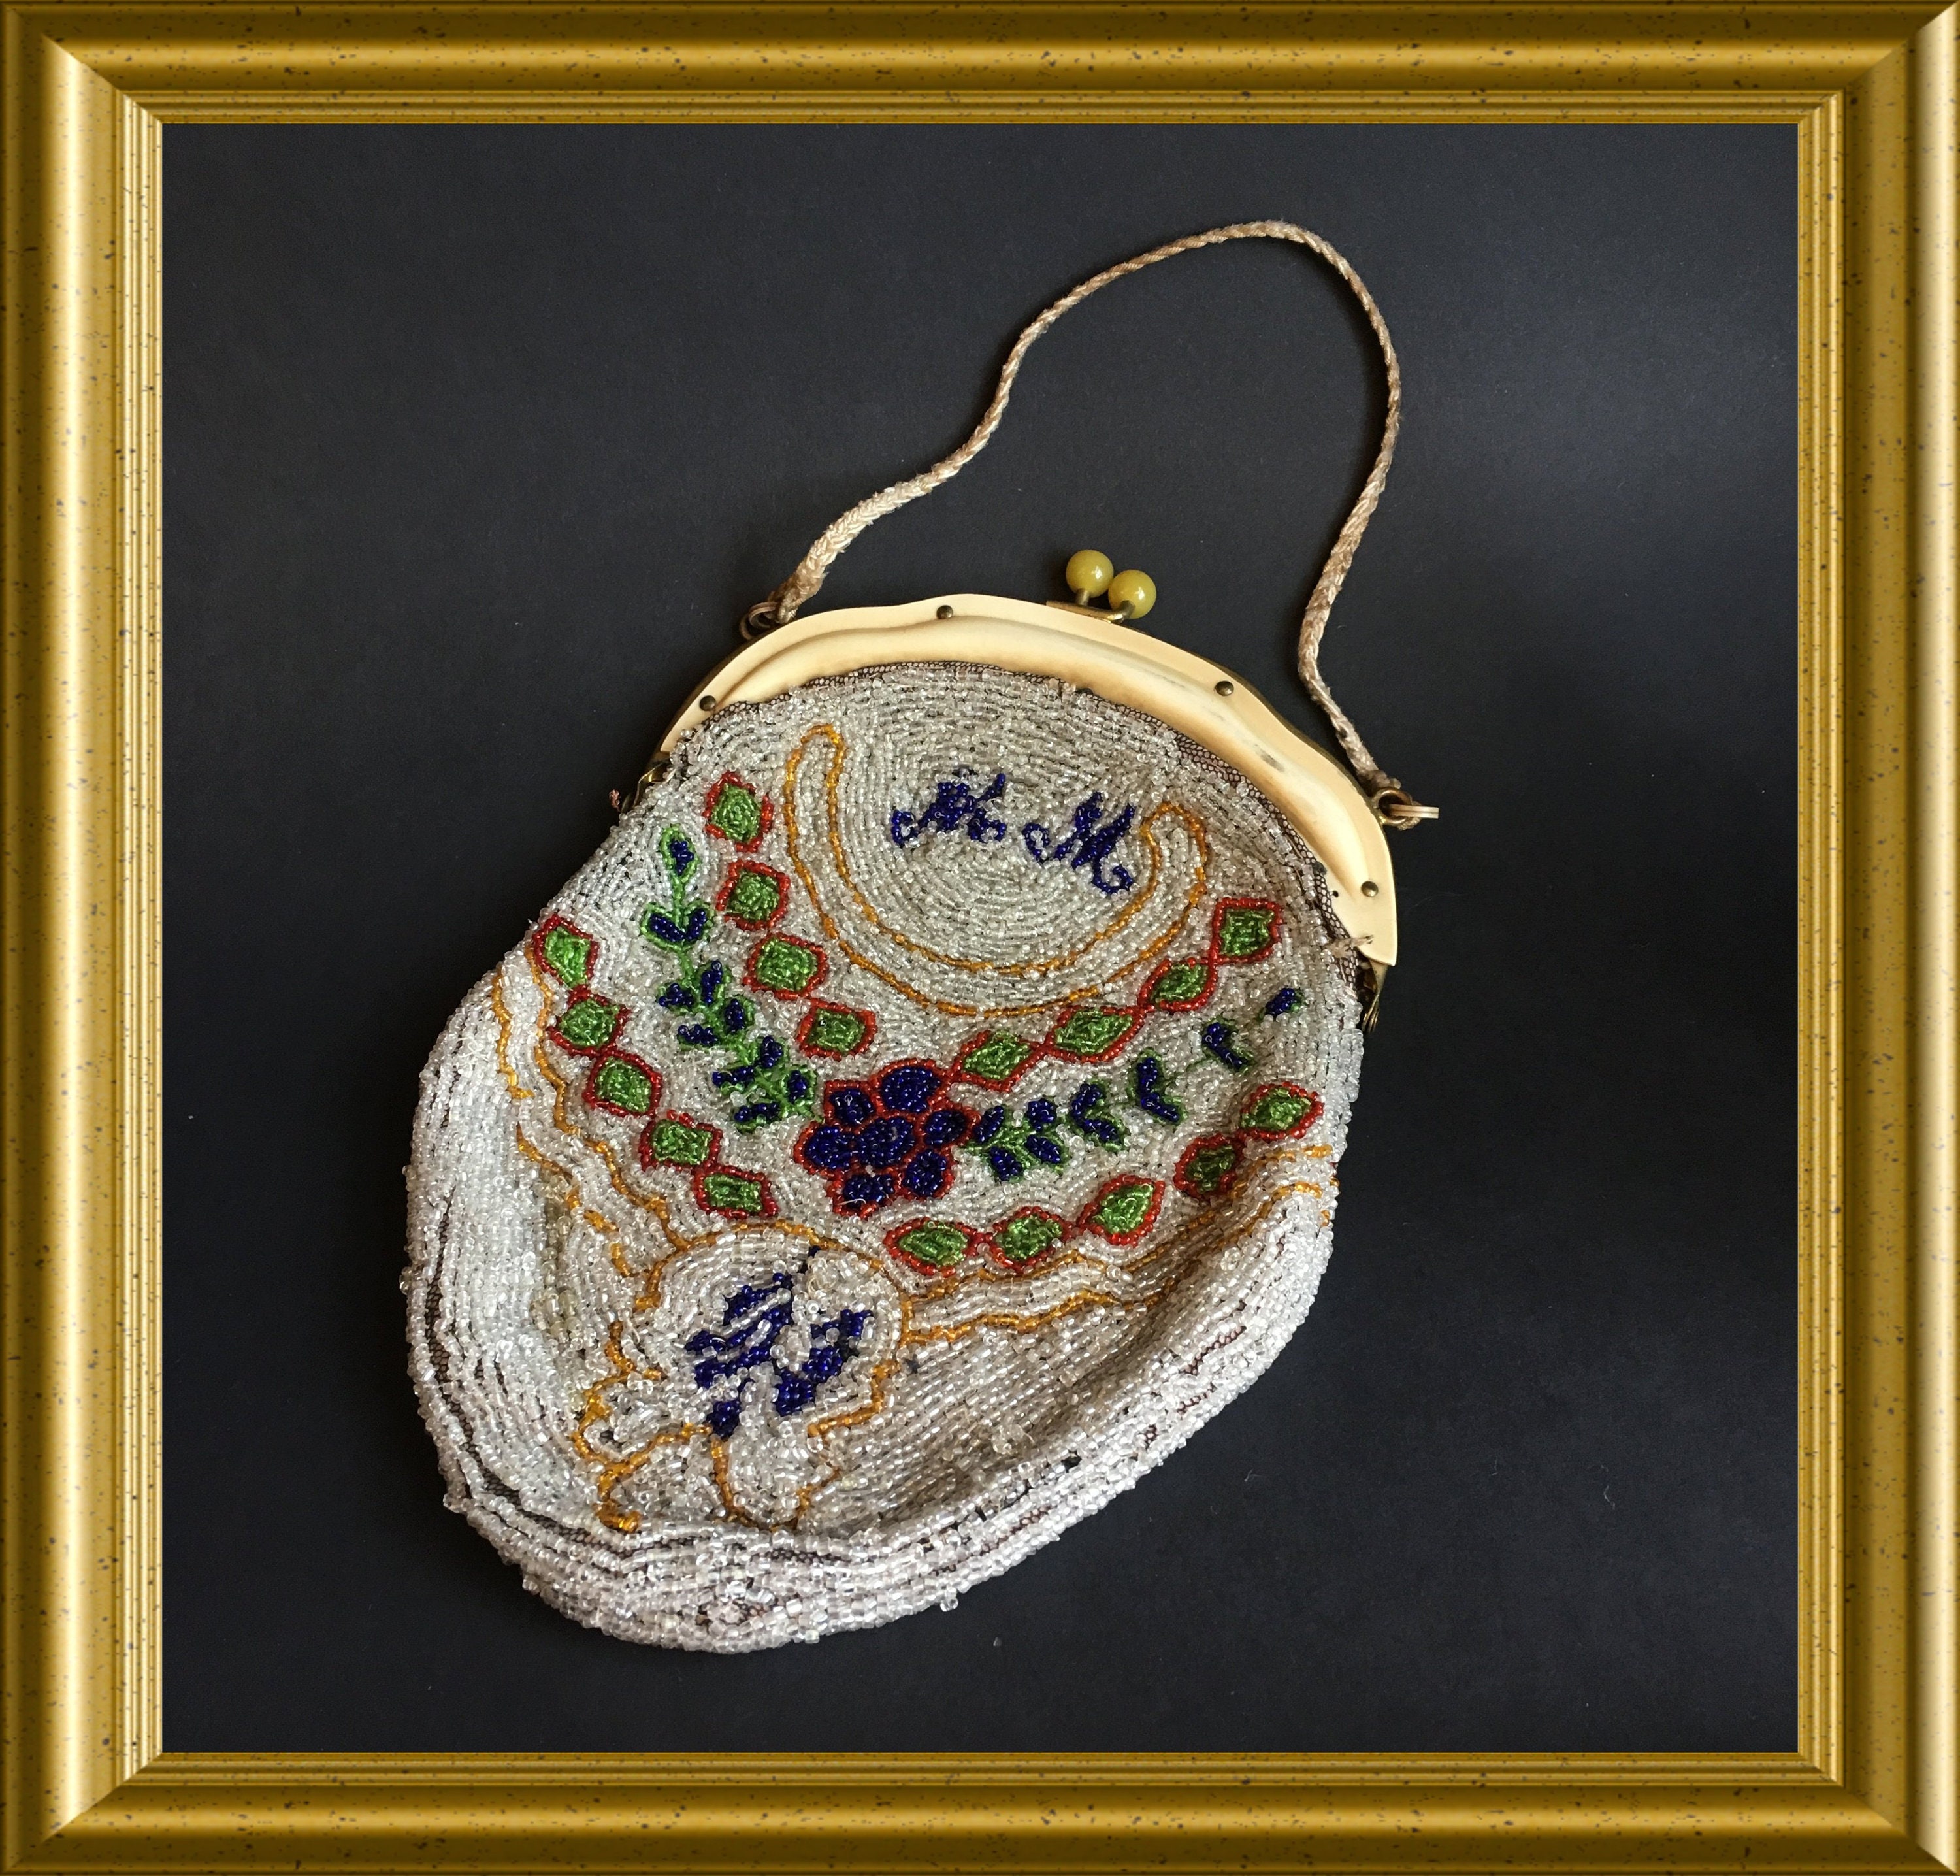 Antique beaded purse / handbag / evening bag